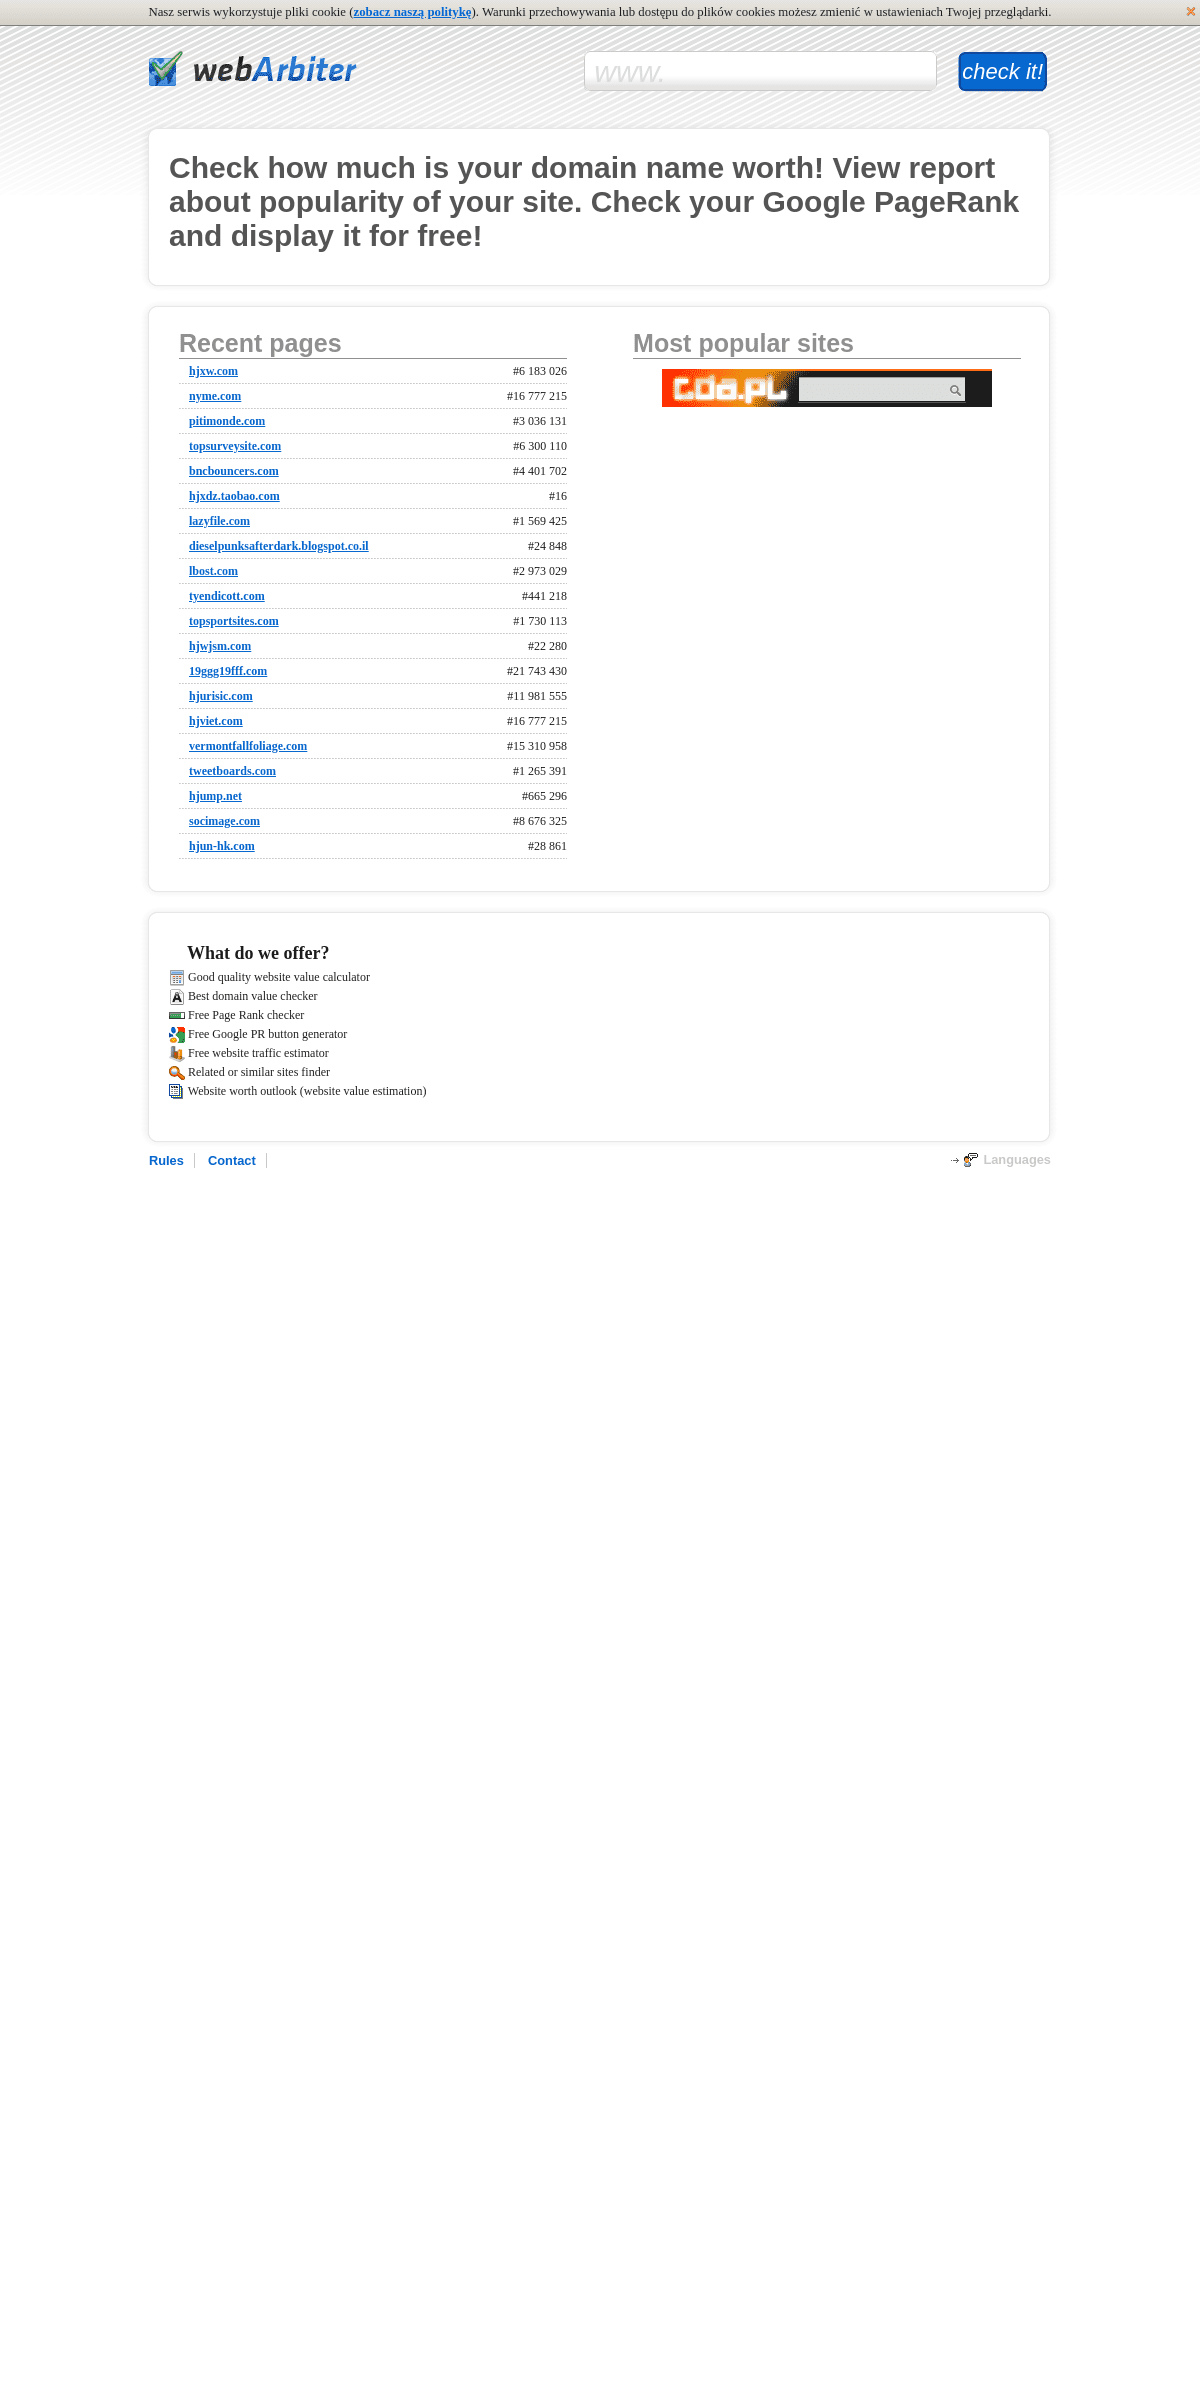 A complete backup of webarbiter.com